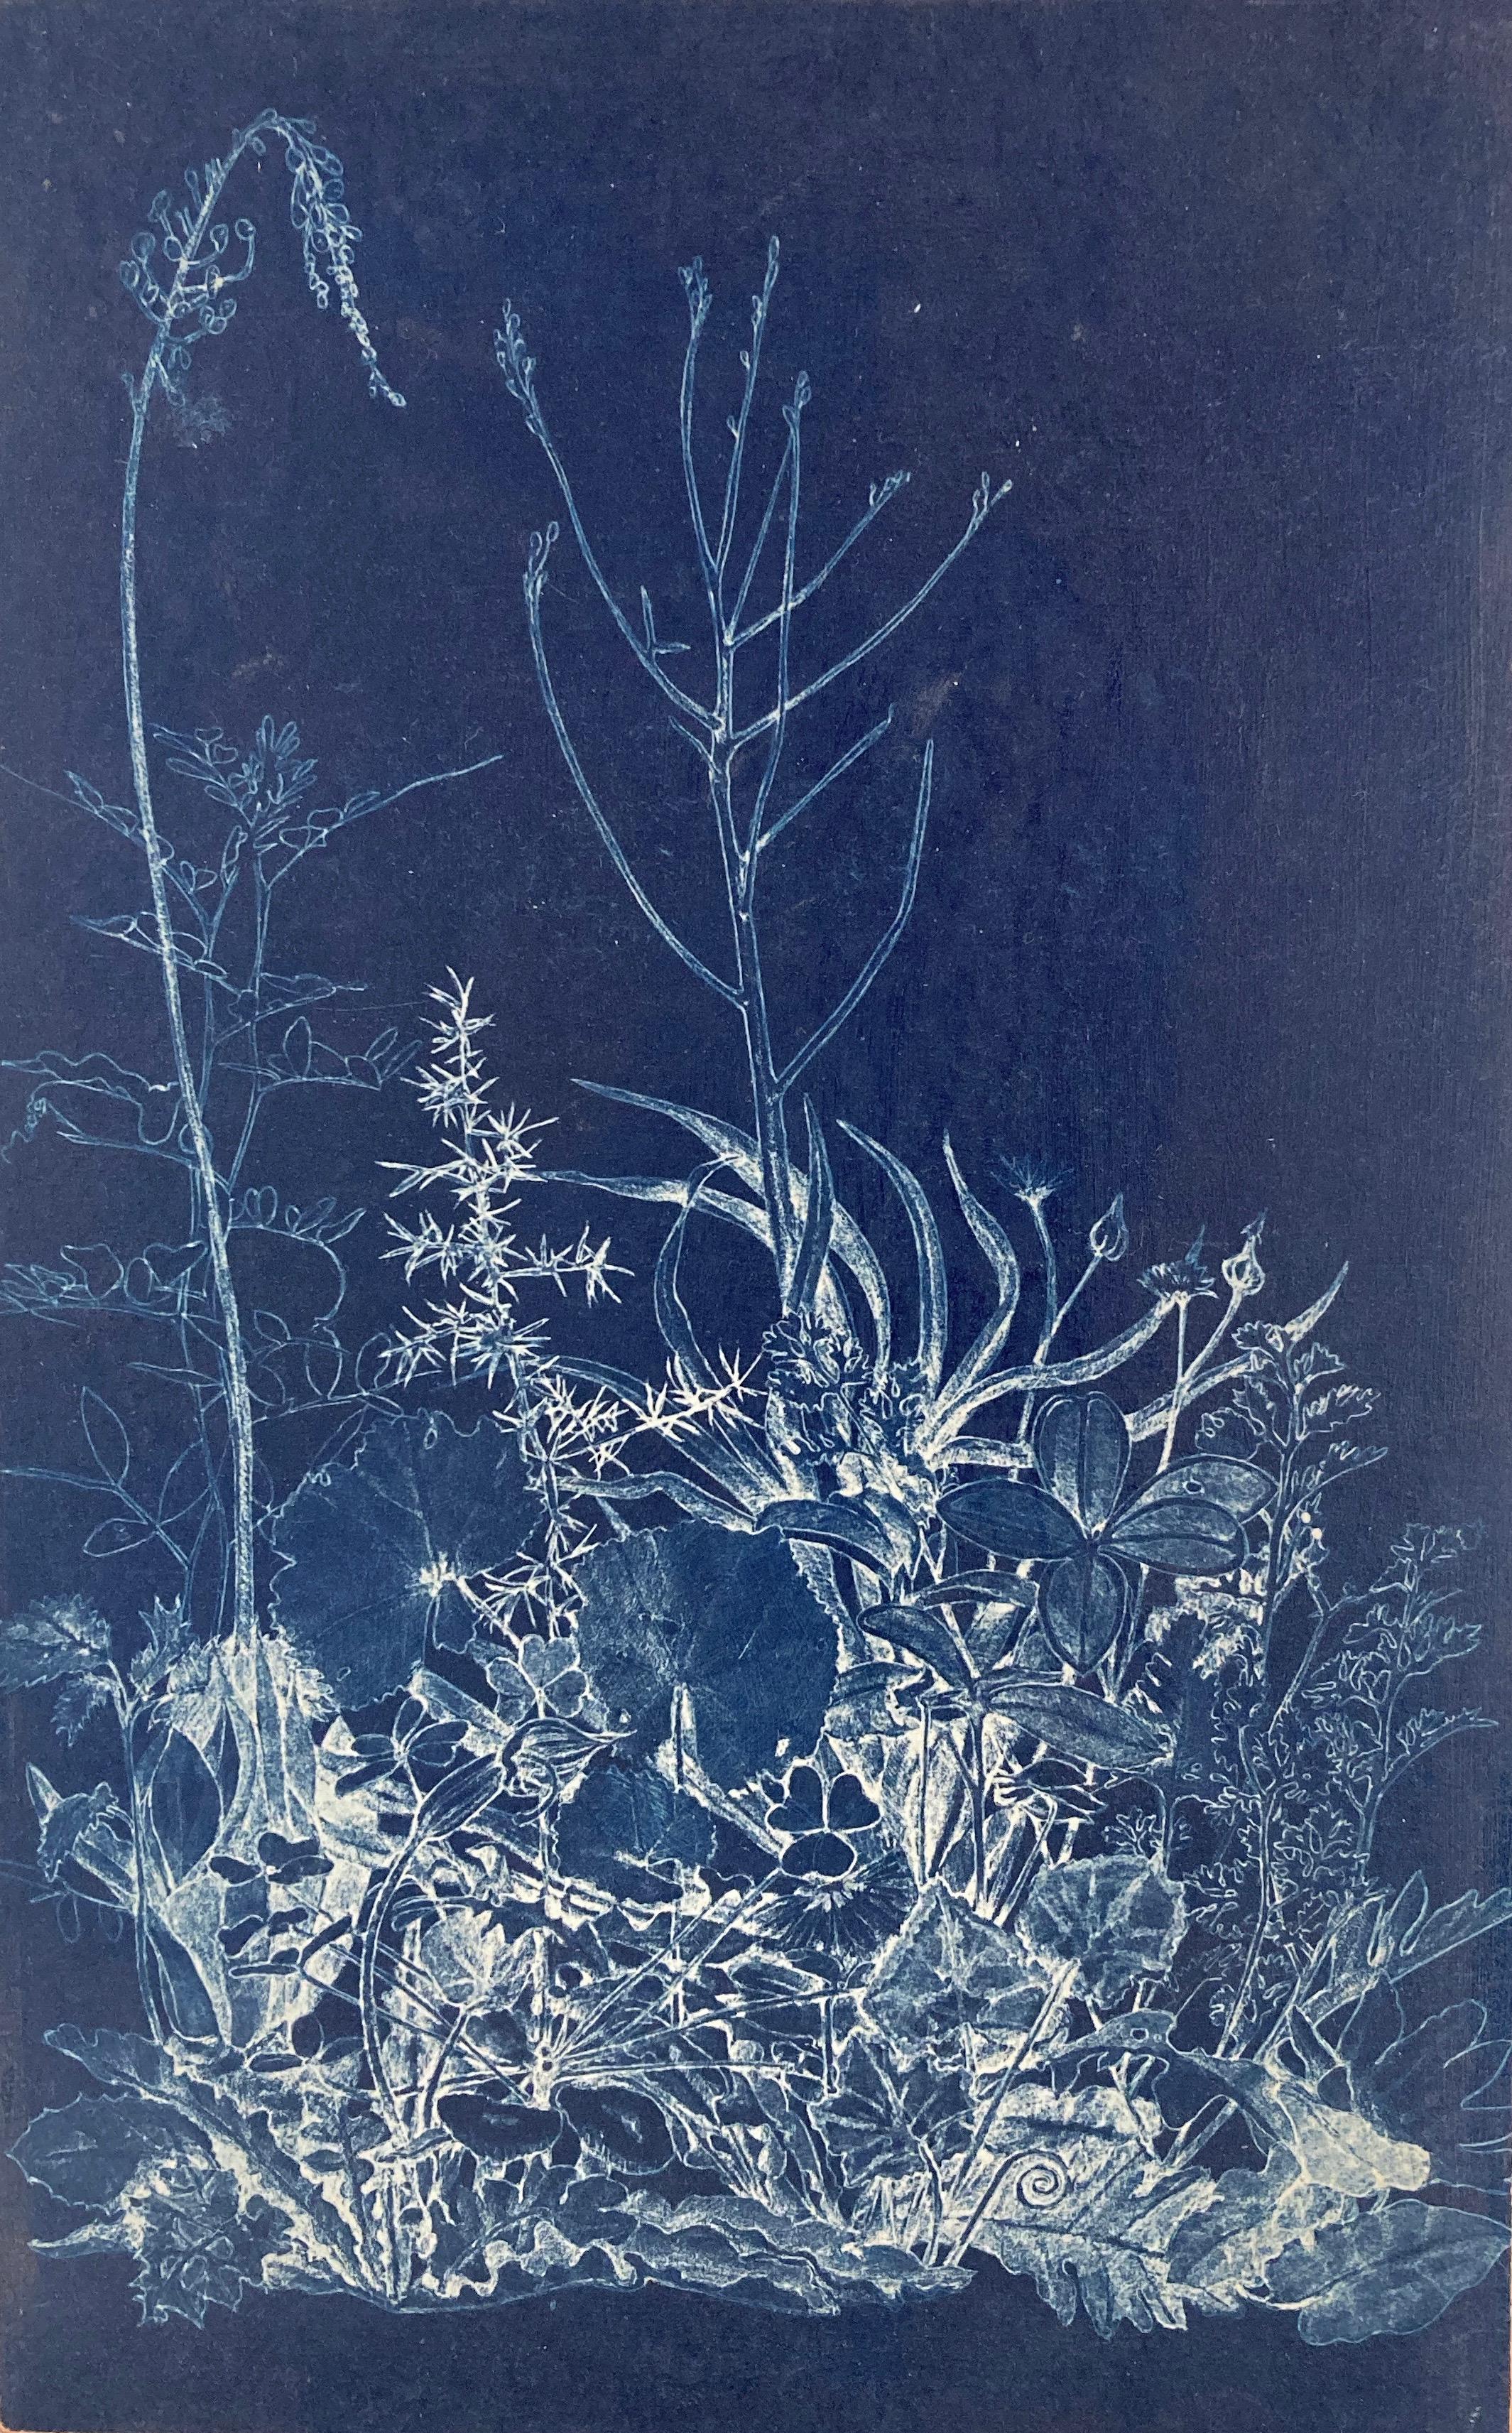 Judith Allen-Efstathiou Landscape Print – „Mapping the Walk“ Fotograhic Flower Study Realistische und abstrakte Blumenstudie in Blau/Weiß